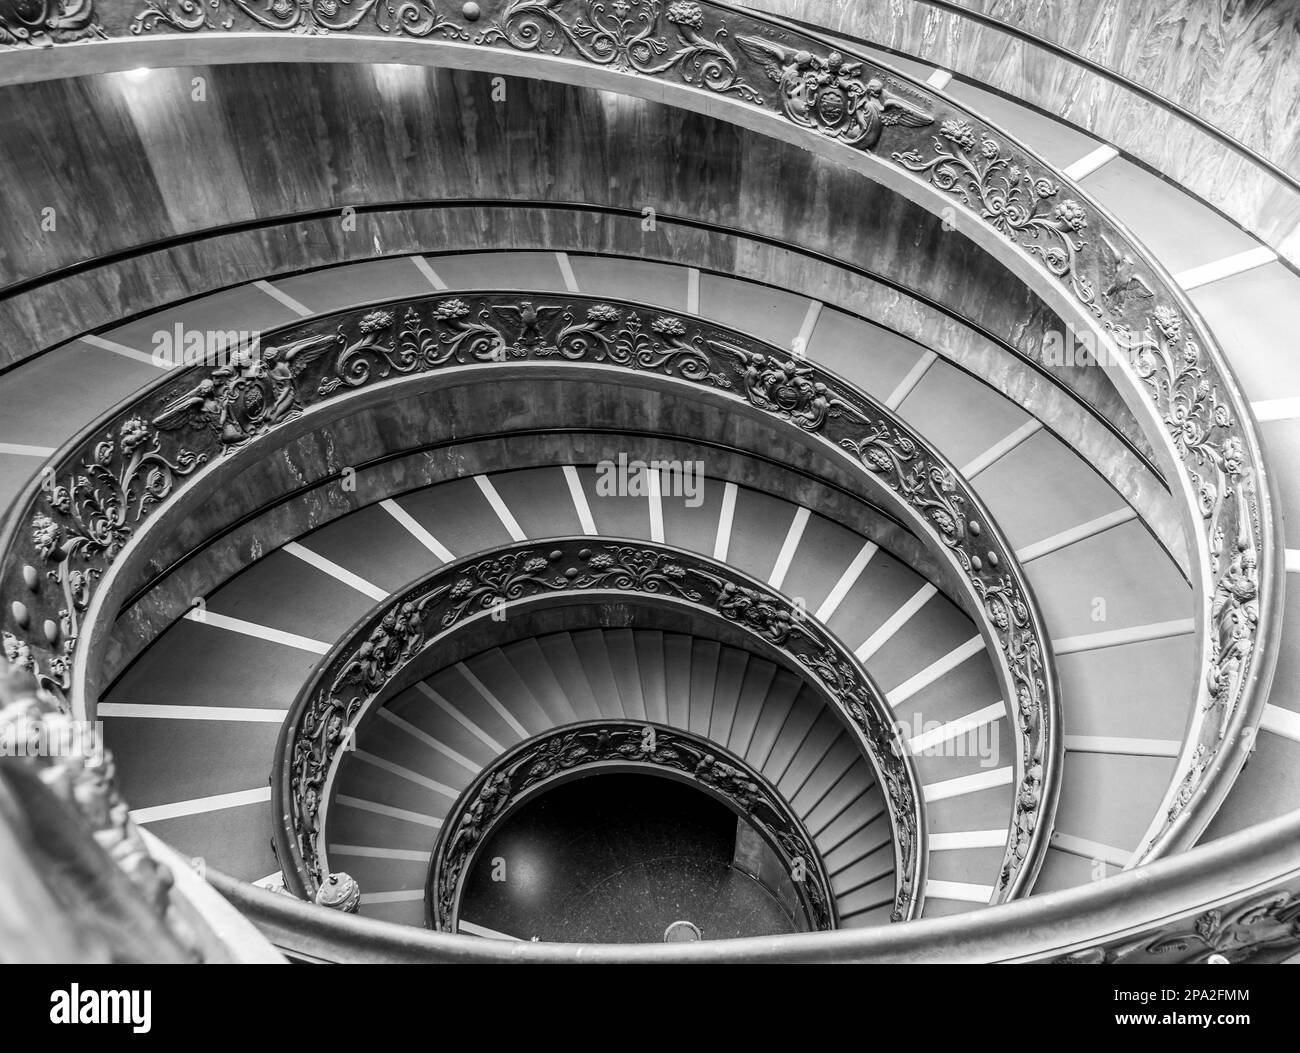 ROM, ITALIEN - CA. SEPTEMBER 2020: Die berühmte Wendeltreppe mit Doppelhelix. Vatikanmuseum, 1932 von Giuseppe Momo gemacht Stockfoto